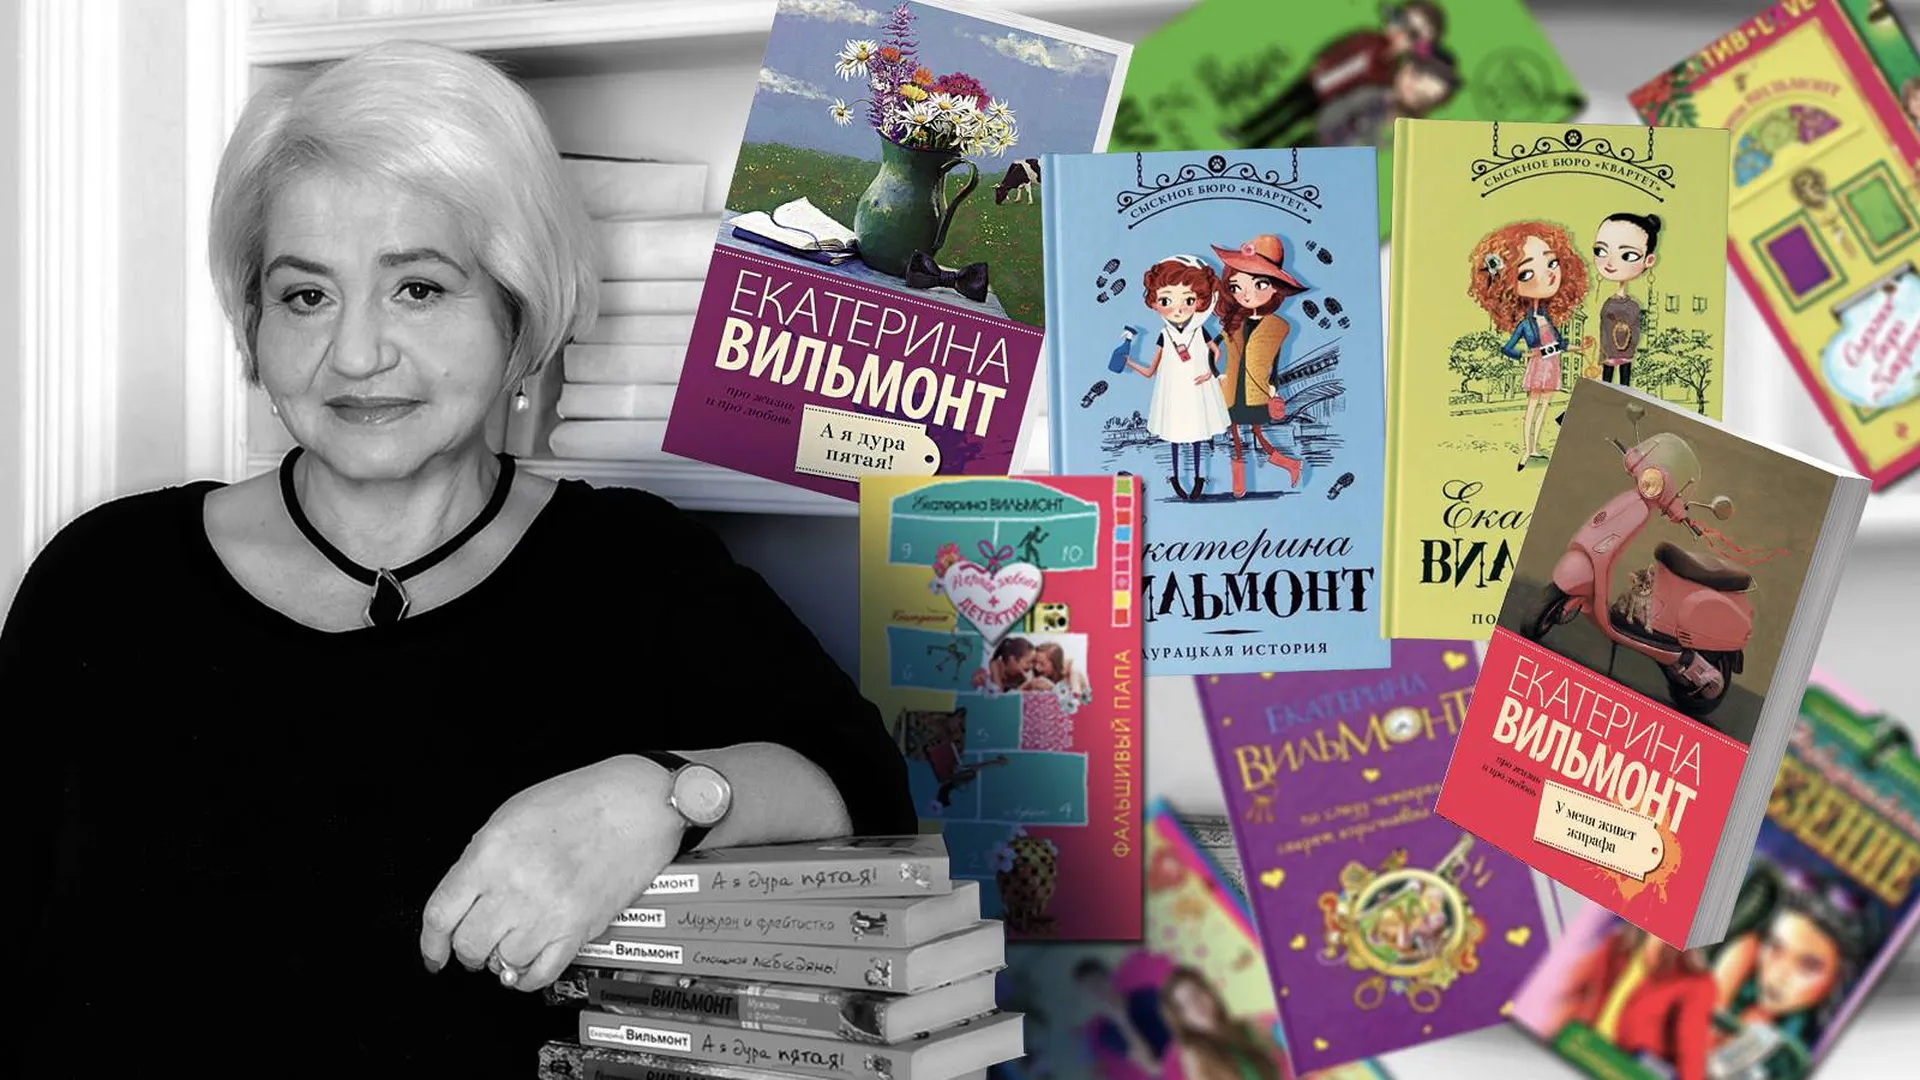 Екатерина Вильмонт и ее многочисленные книги